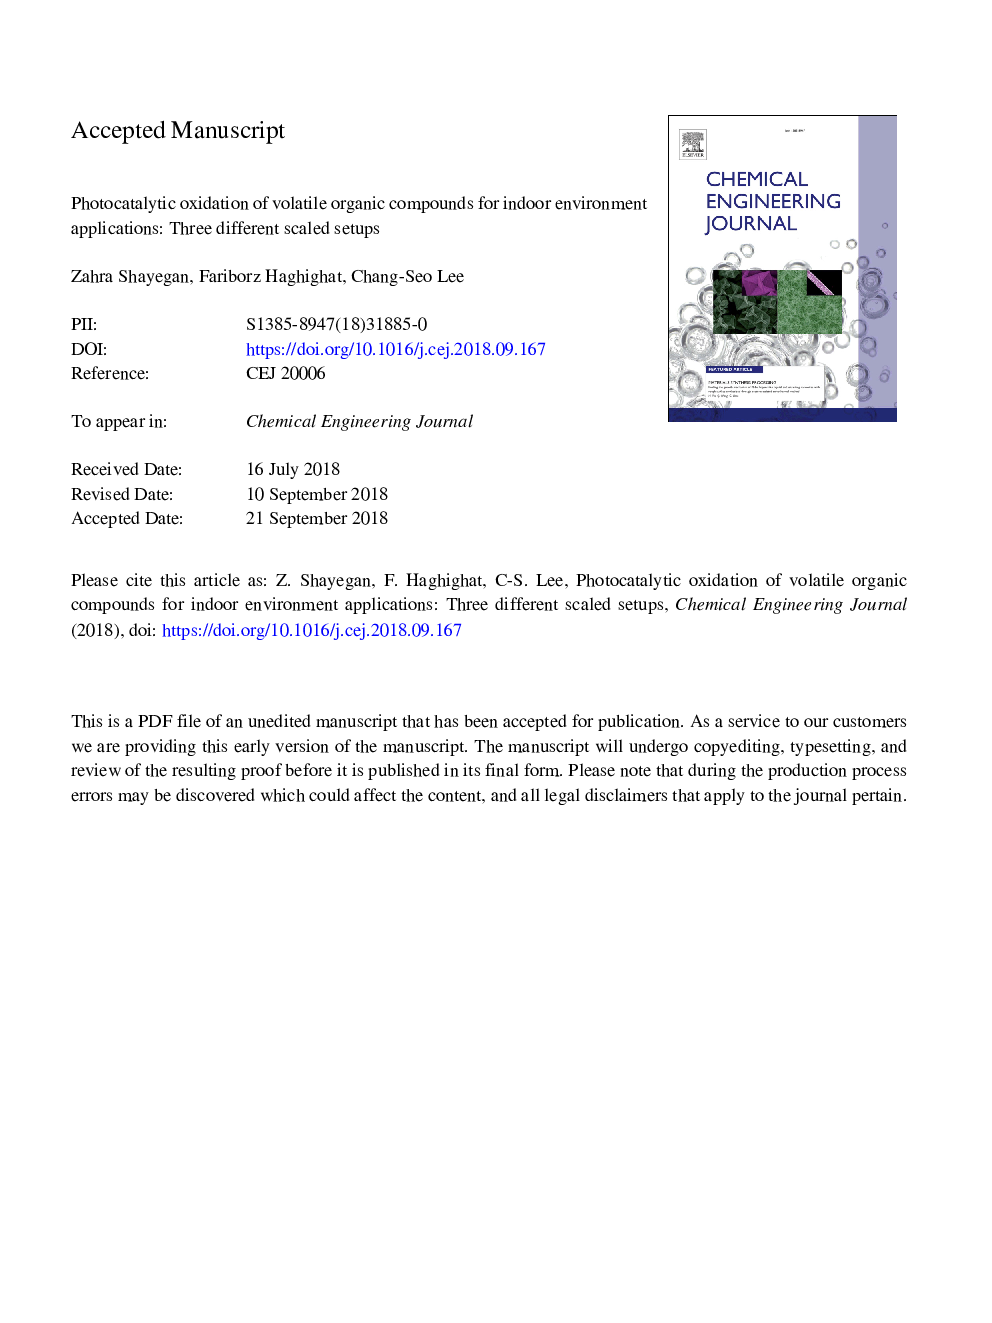 اکسیداسیون فوتوکاتالیستی از ترکیبات آلی فرار برای برنامه های محیط زیست داخلی: سه تنظیم مختلف مقیاس پذیر